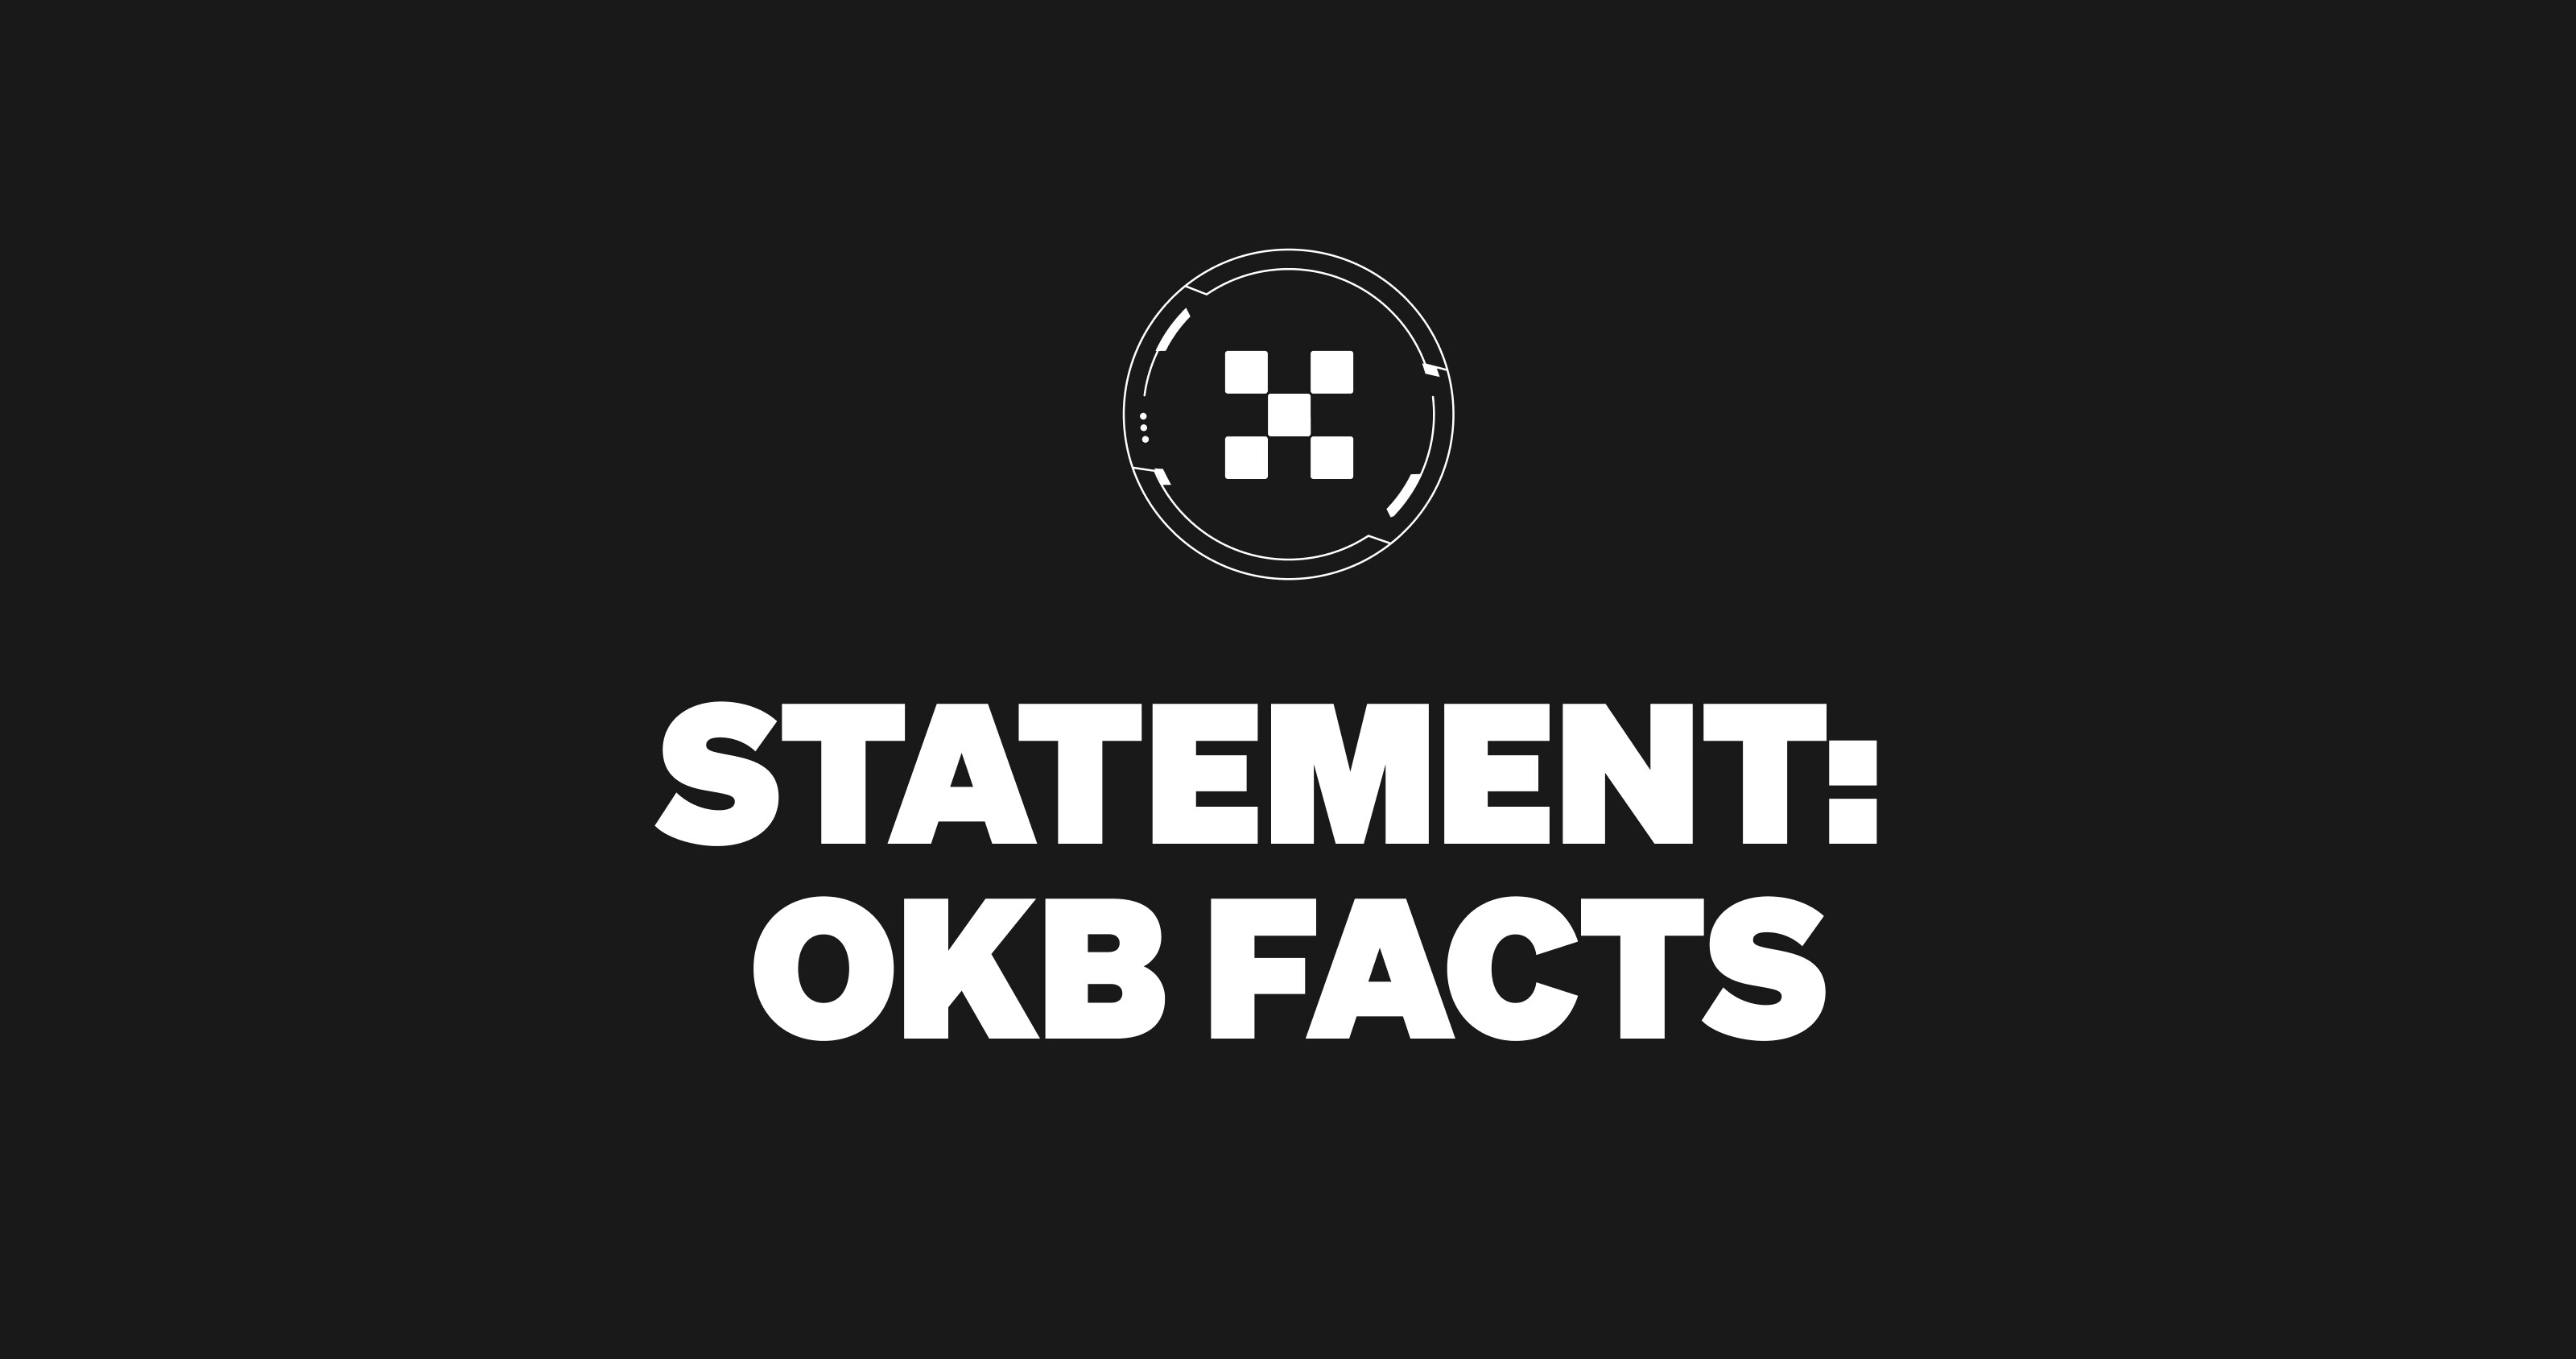 OKX Statement on OKB's thumbnail